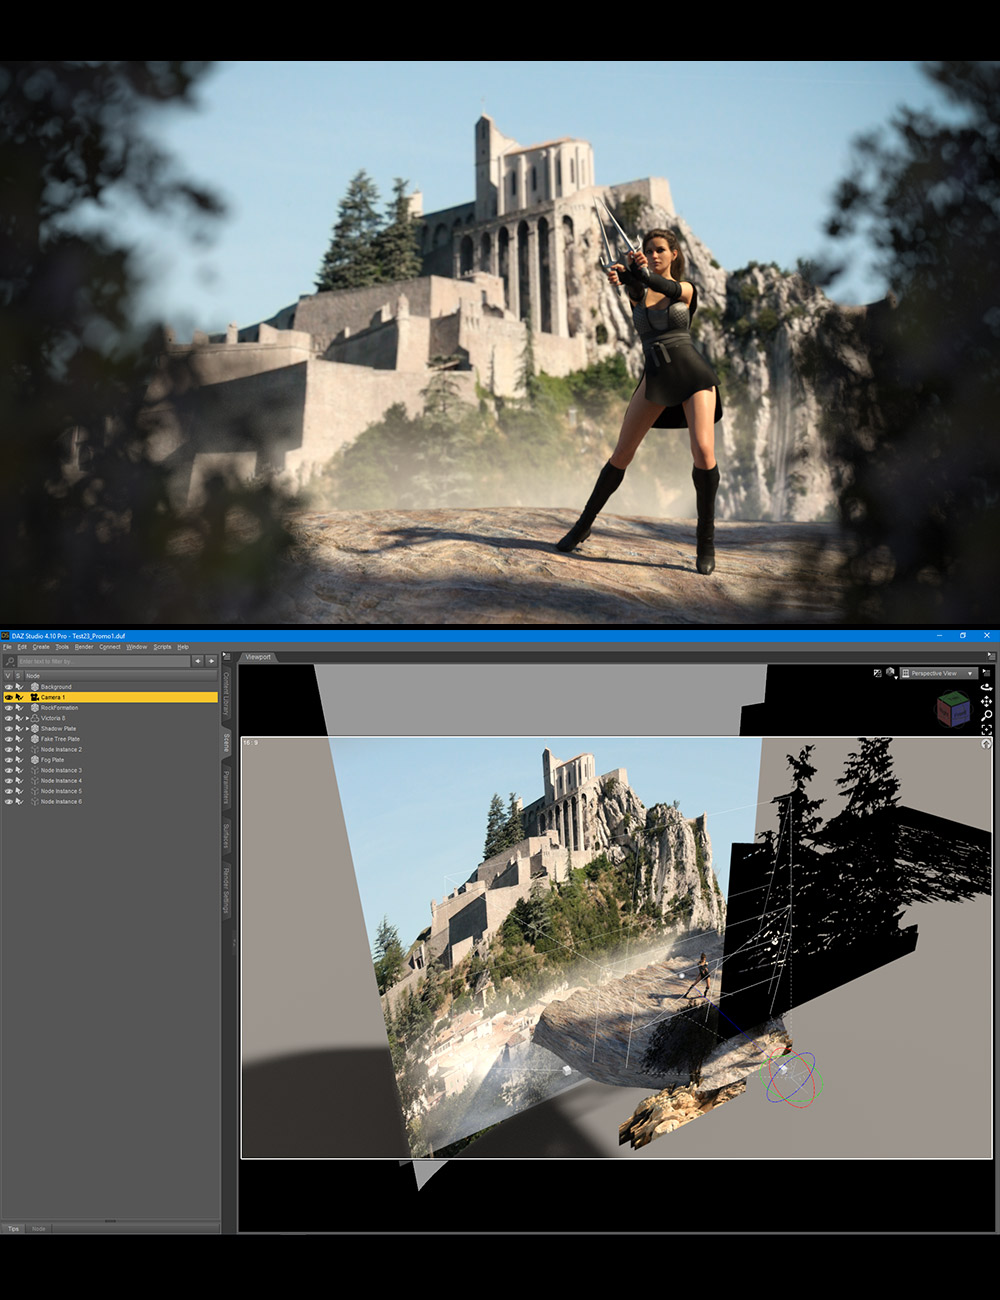 Castles In The Mist by: Dreamlight, 3D Models by Daz 3D